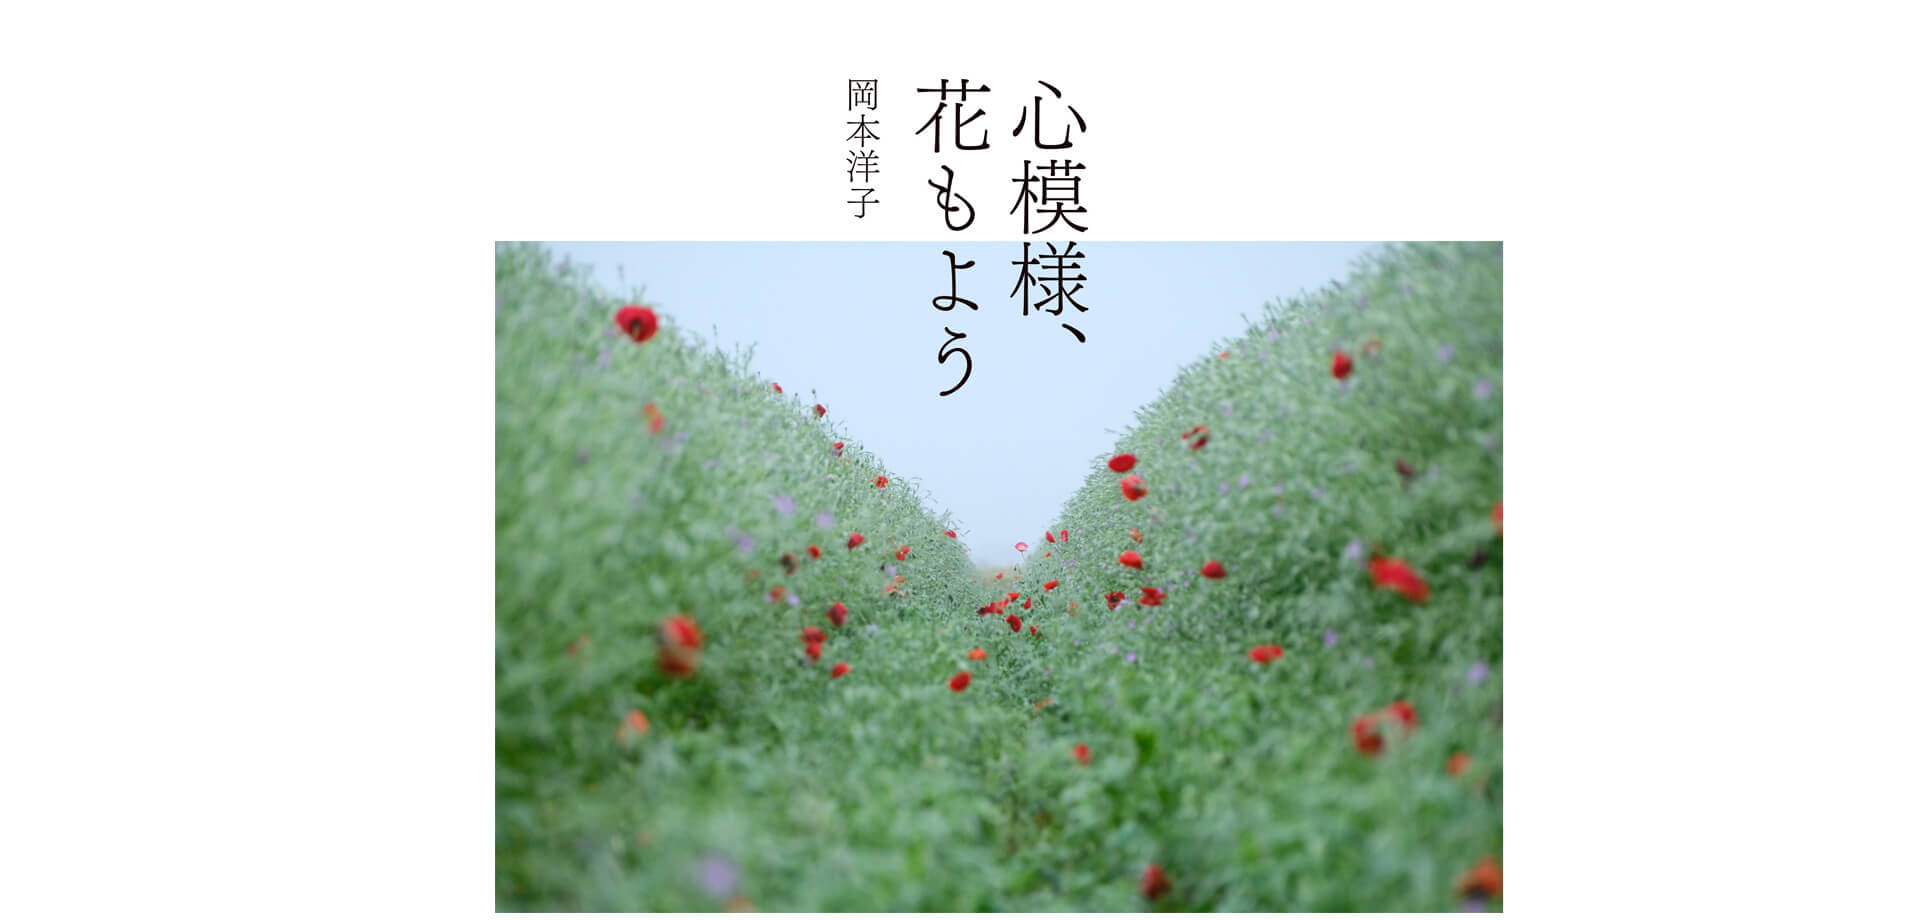 フジフイルム スクエア　企画写真展岡本洋子写真展「心模様、花もよう」